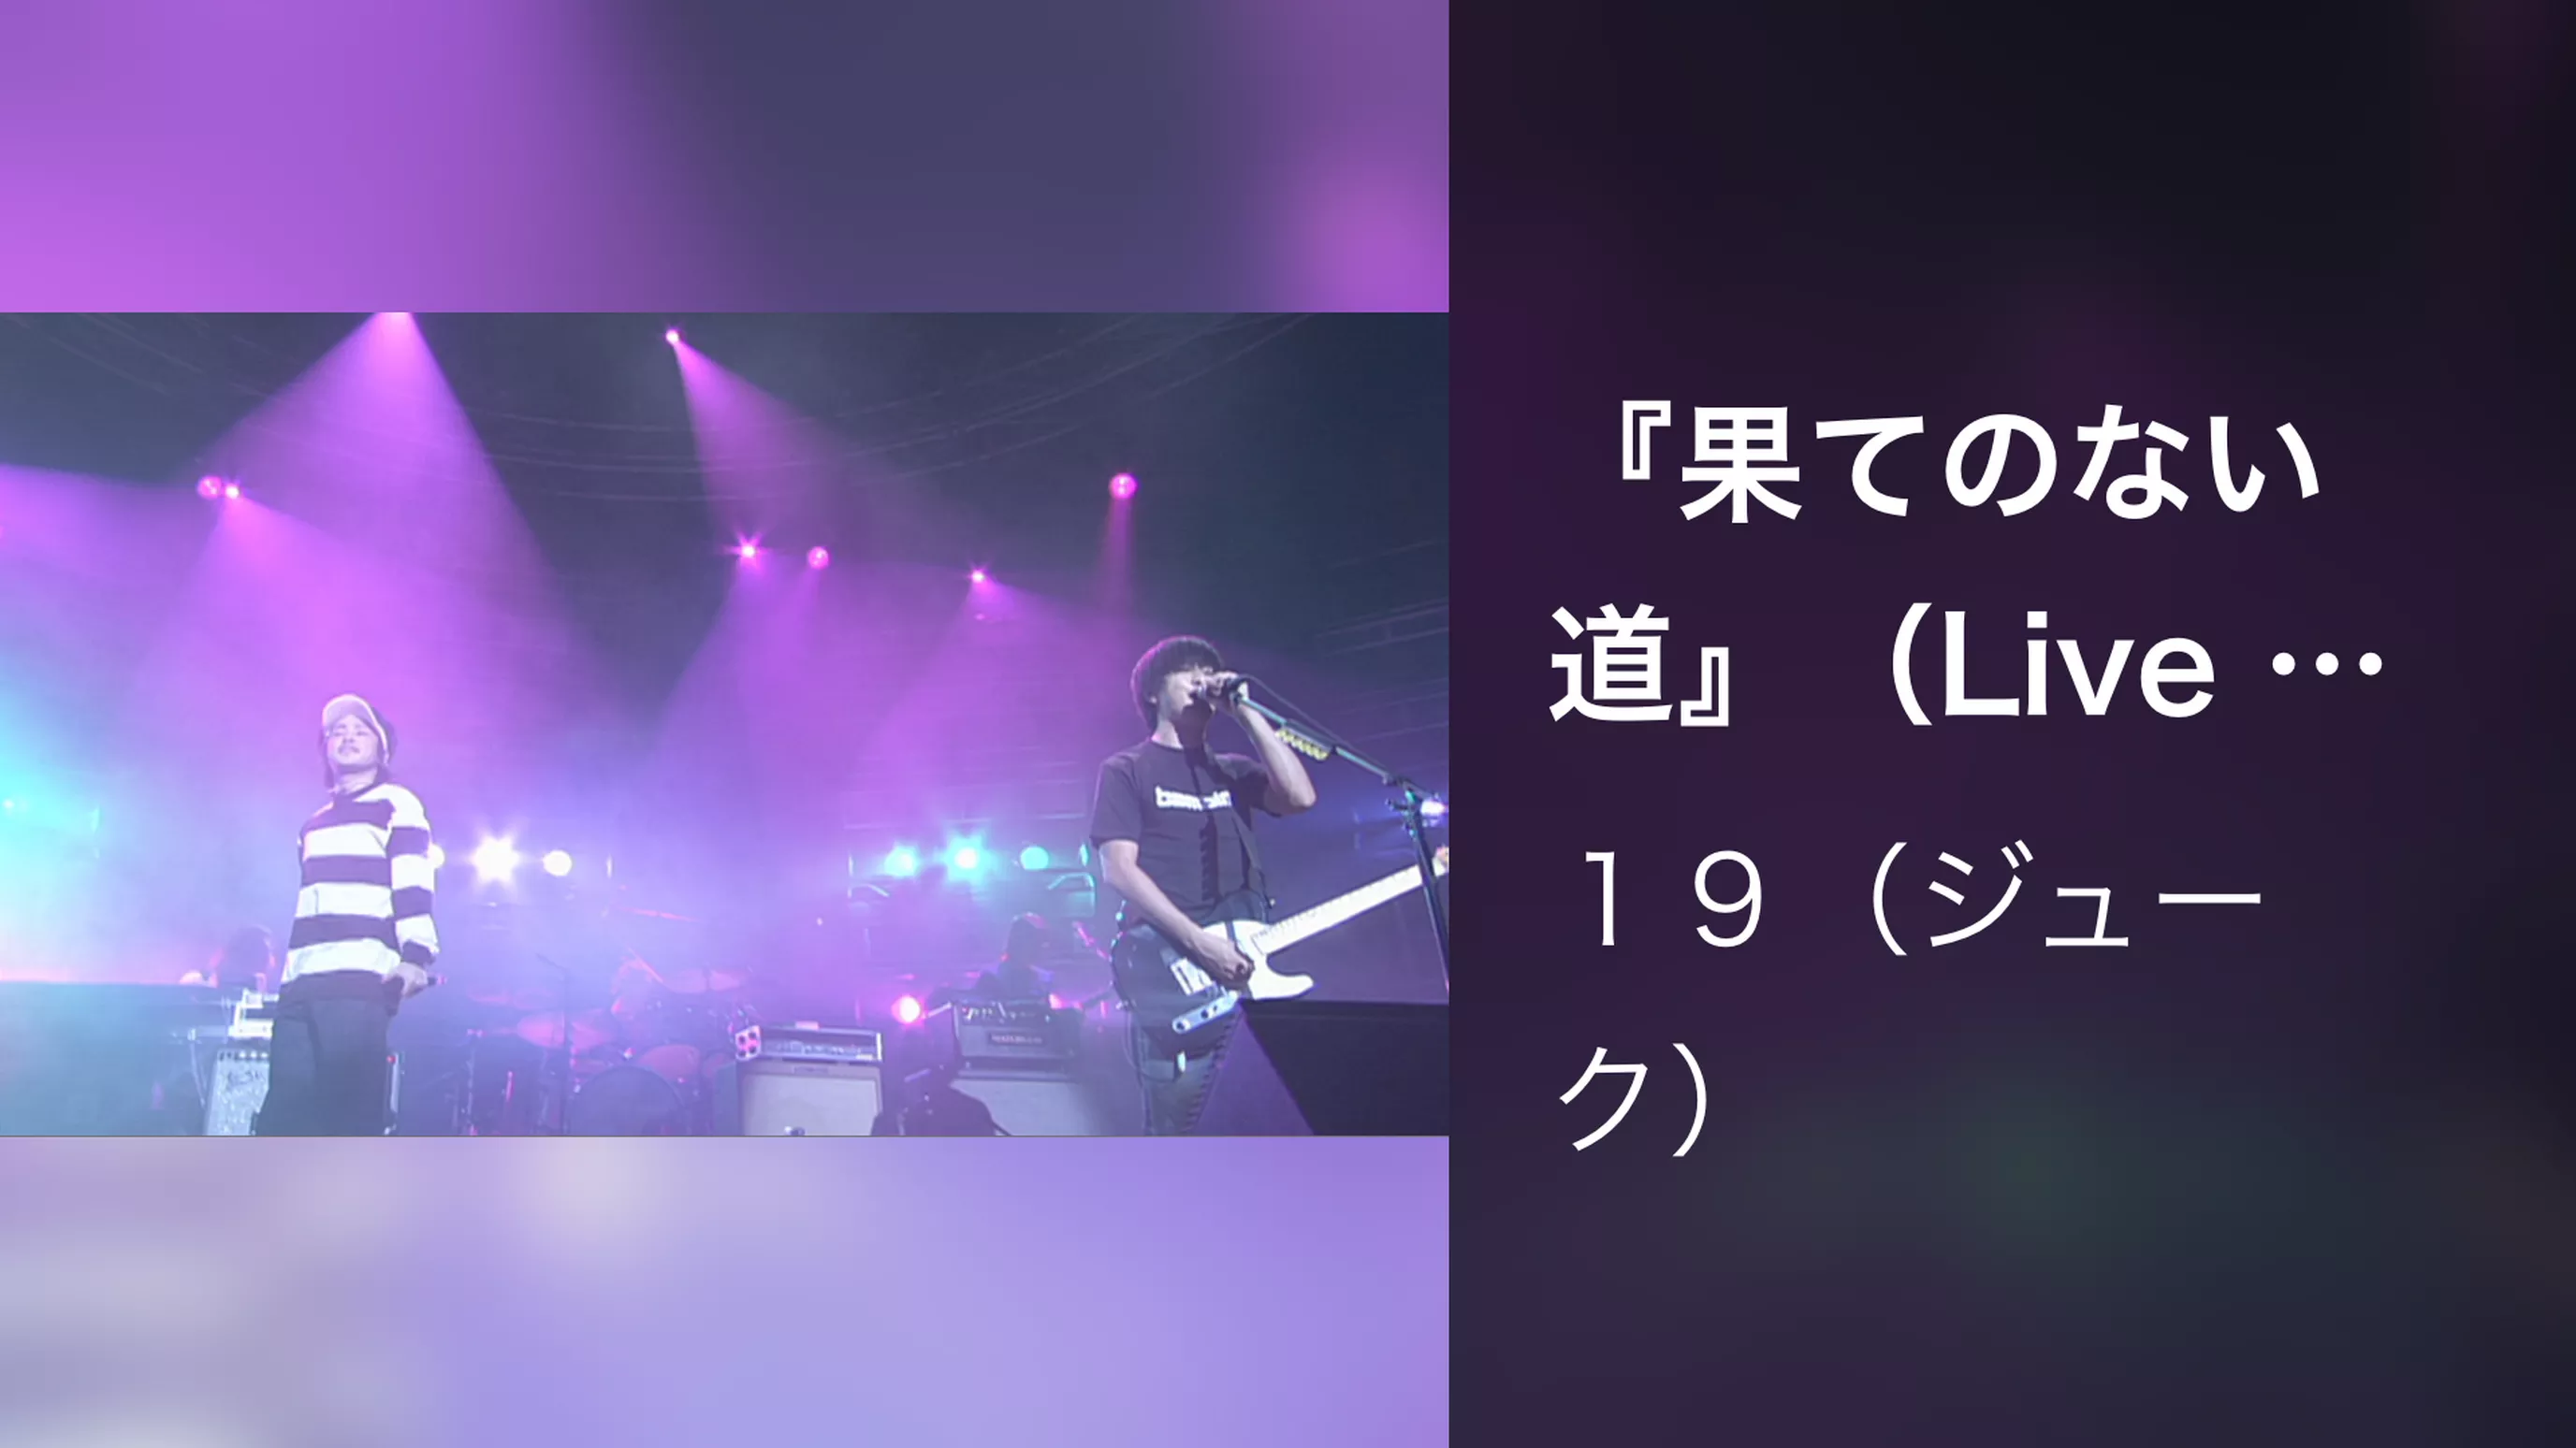 『果てのない道』（Live at 渋谷公会堂,2001.11.21）